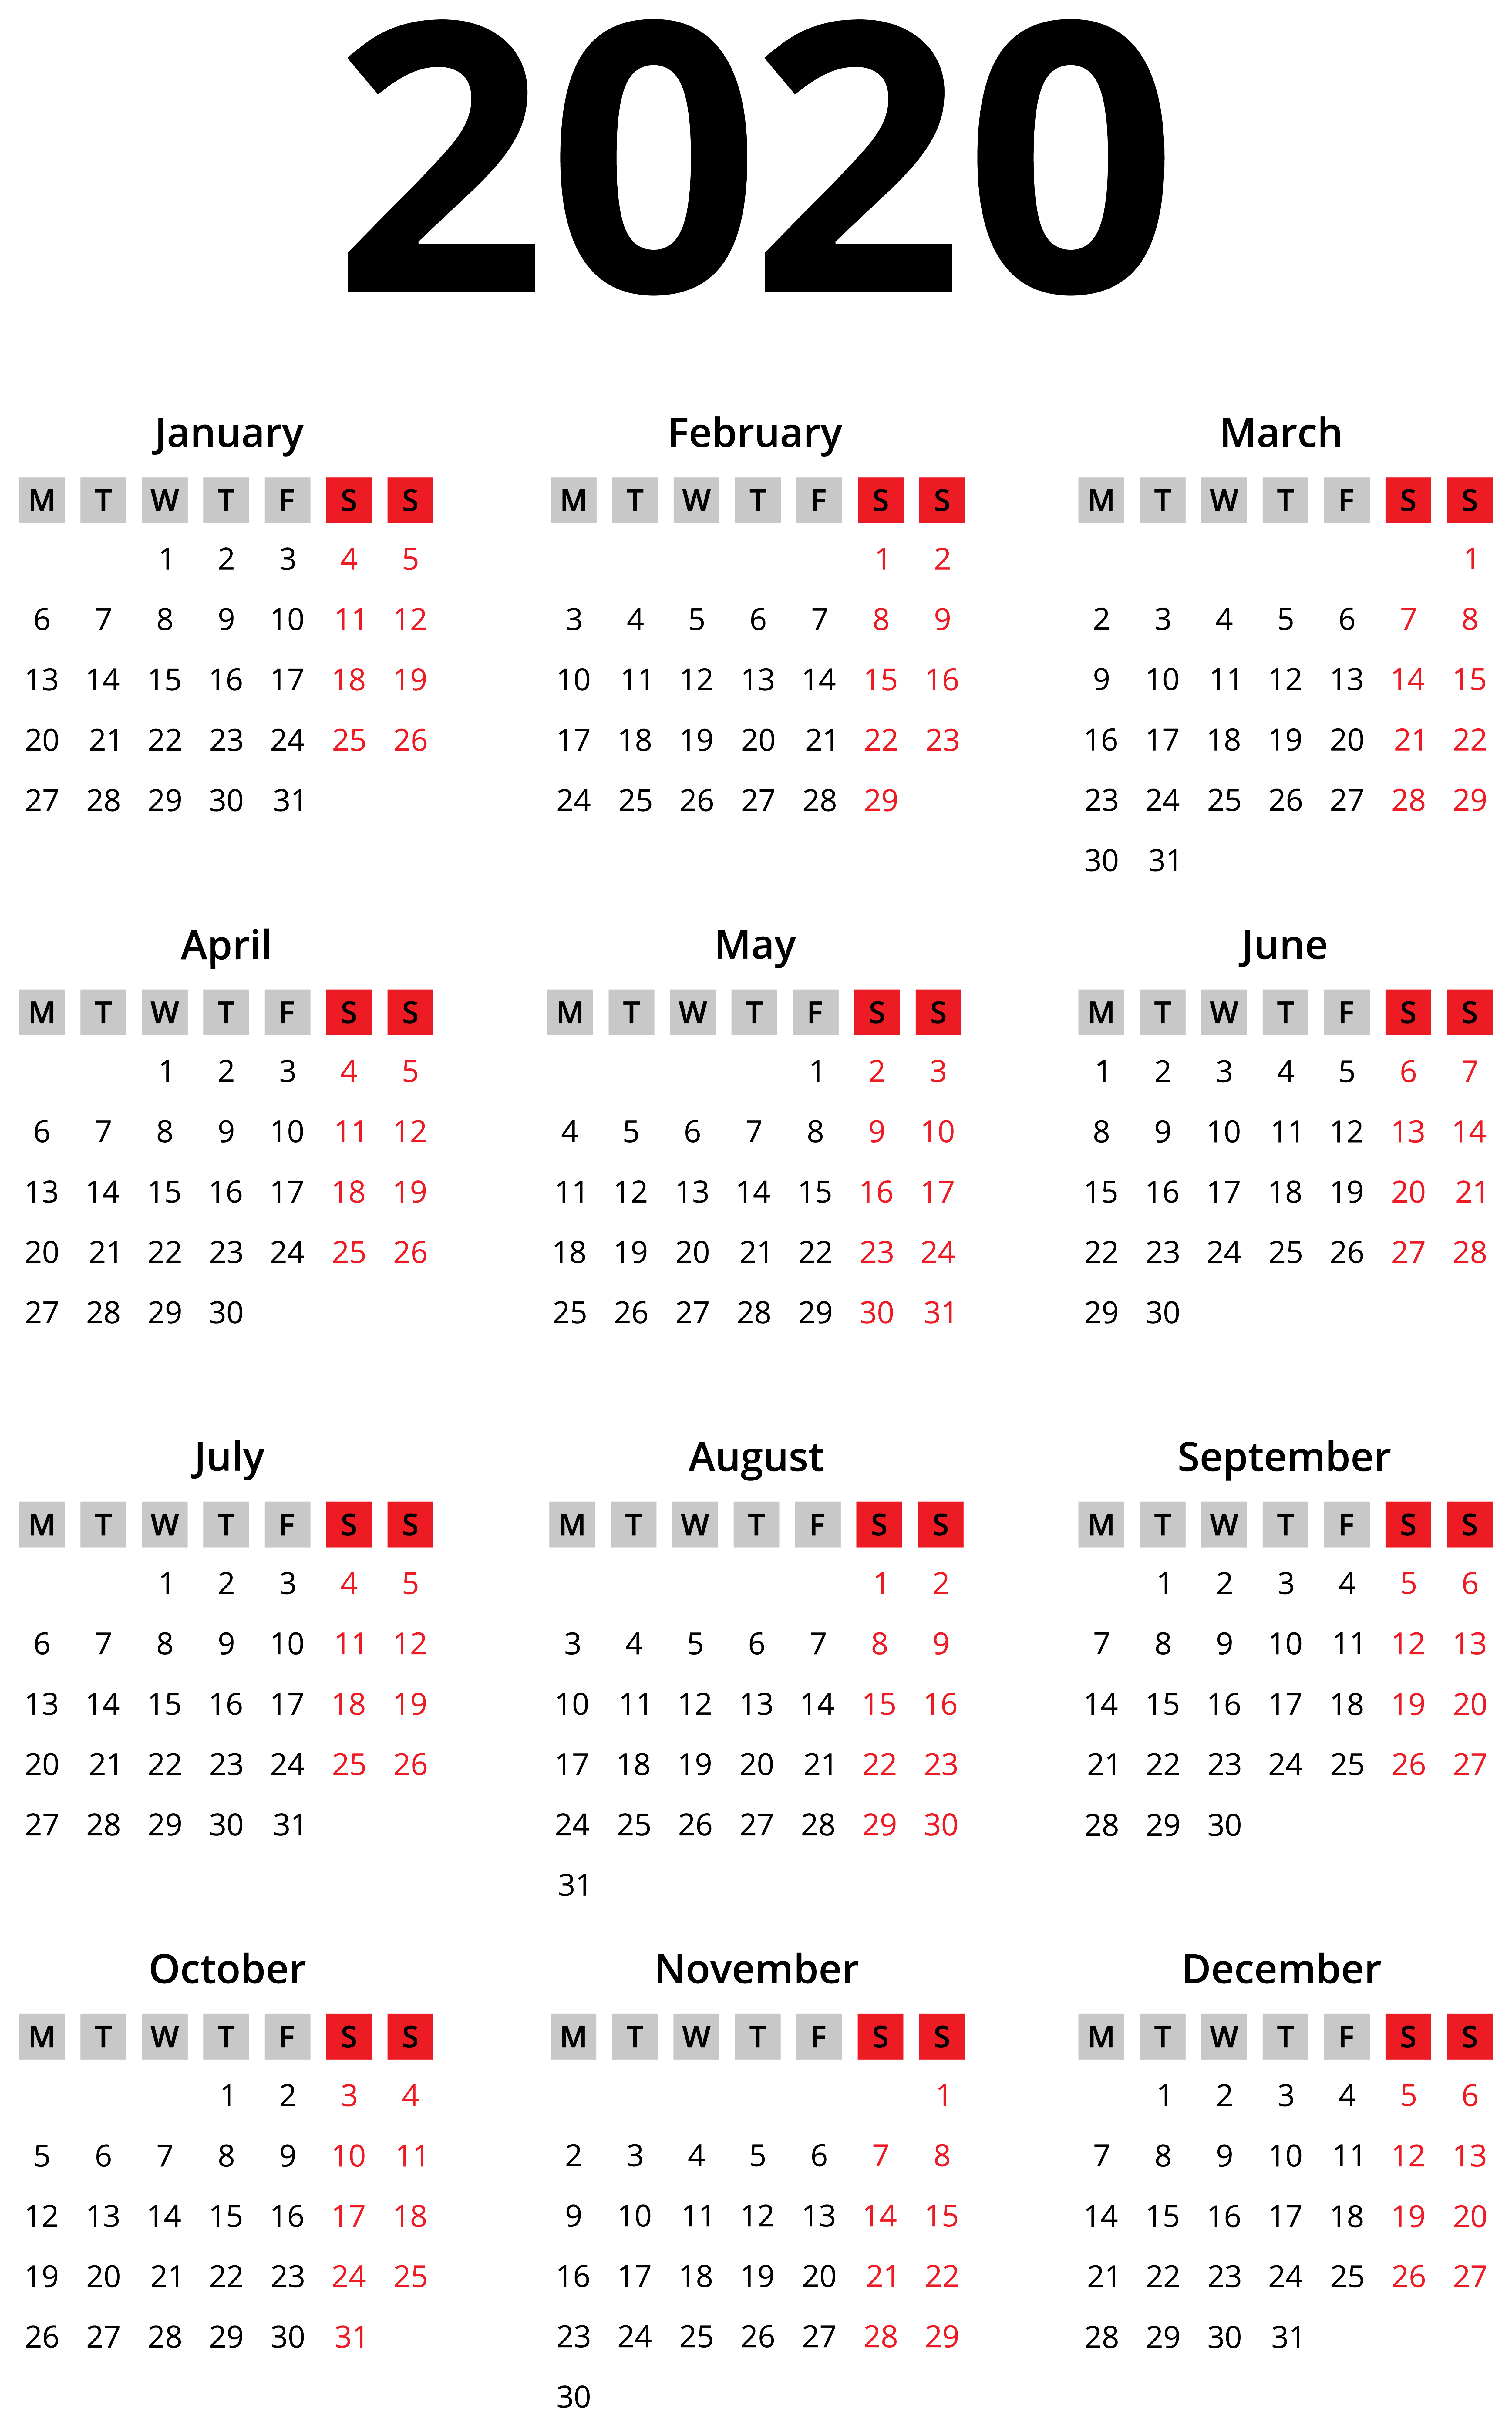 2020 Calendar Wallpapers - Wallpaper Cave5 日前